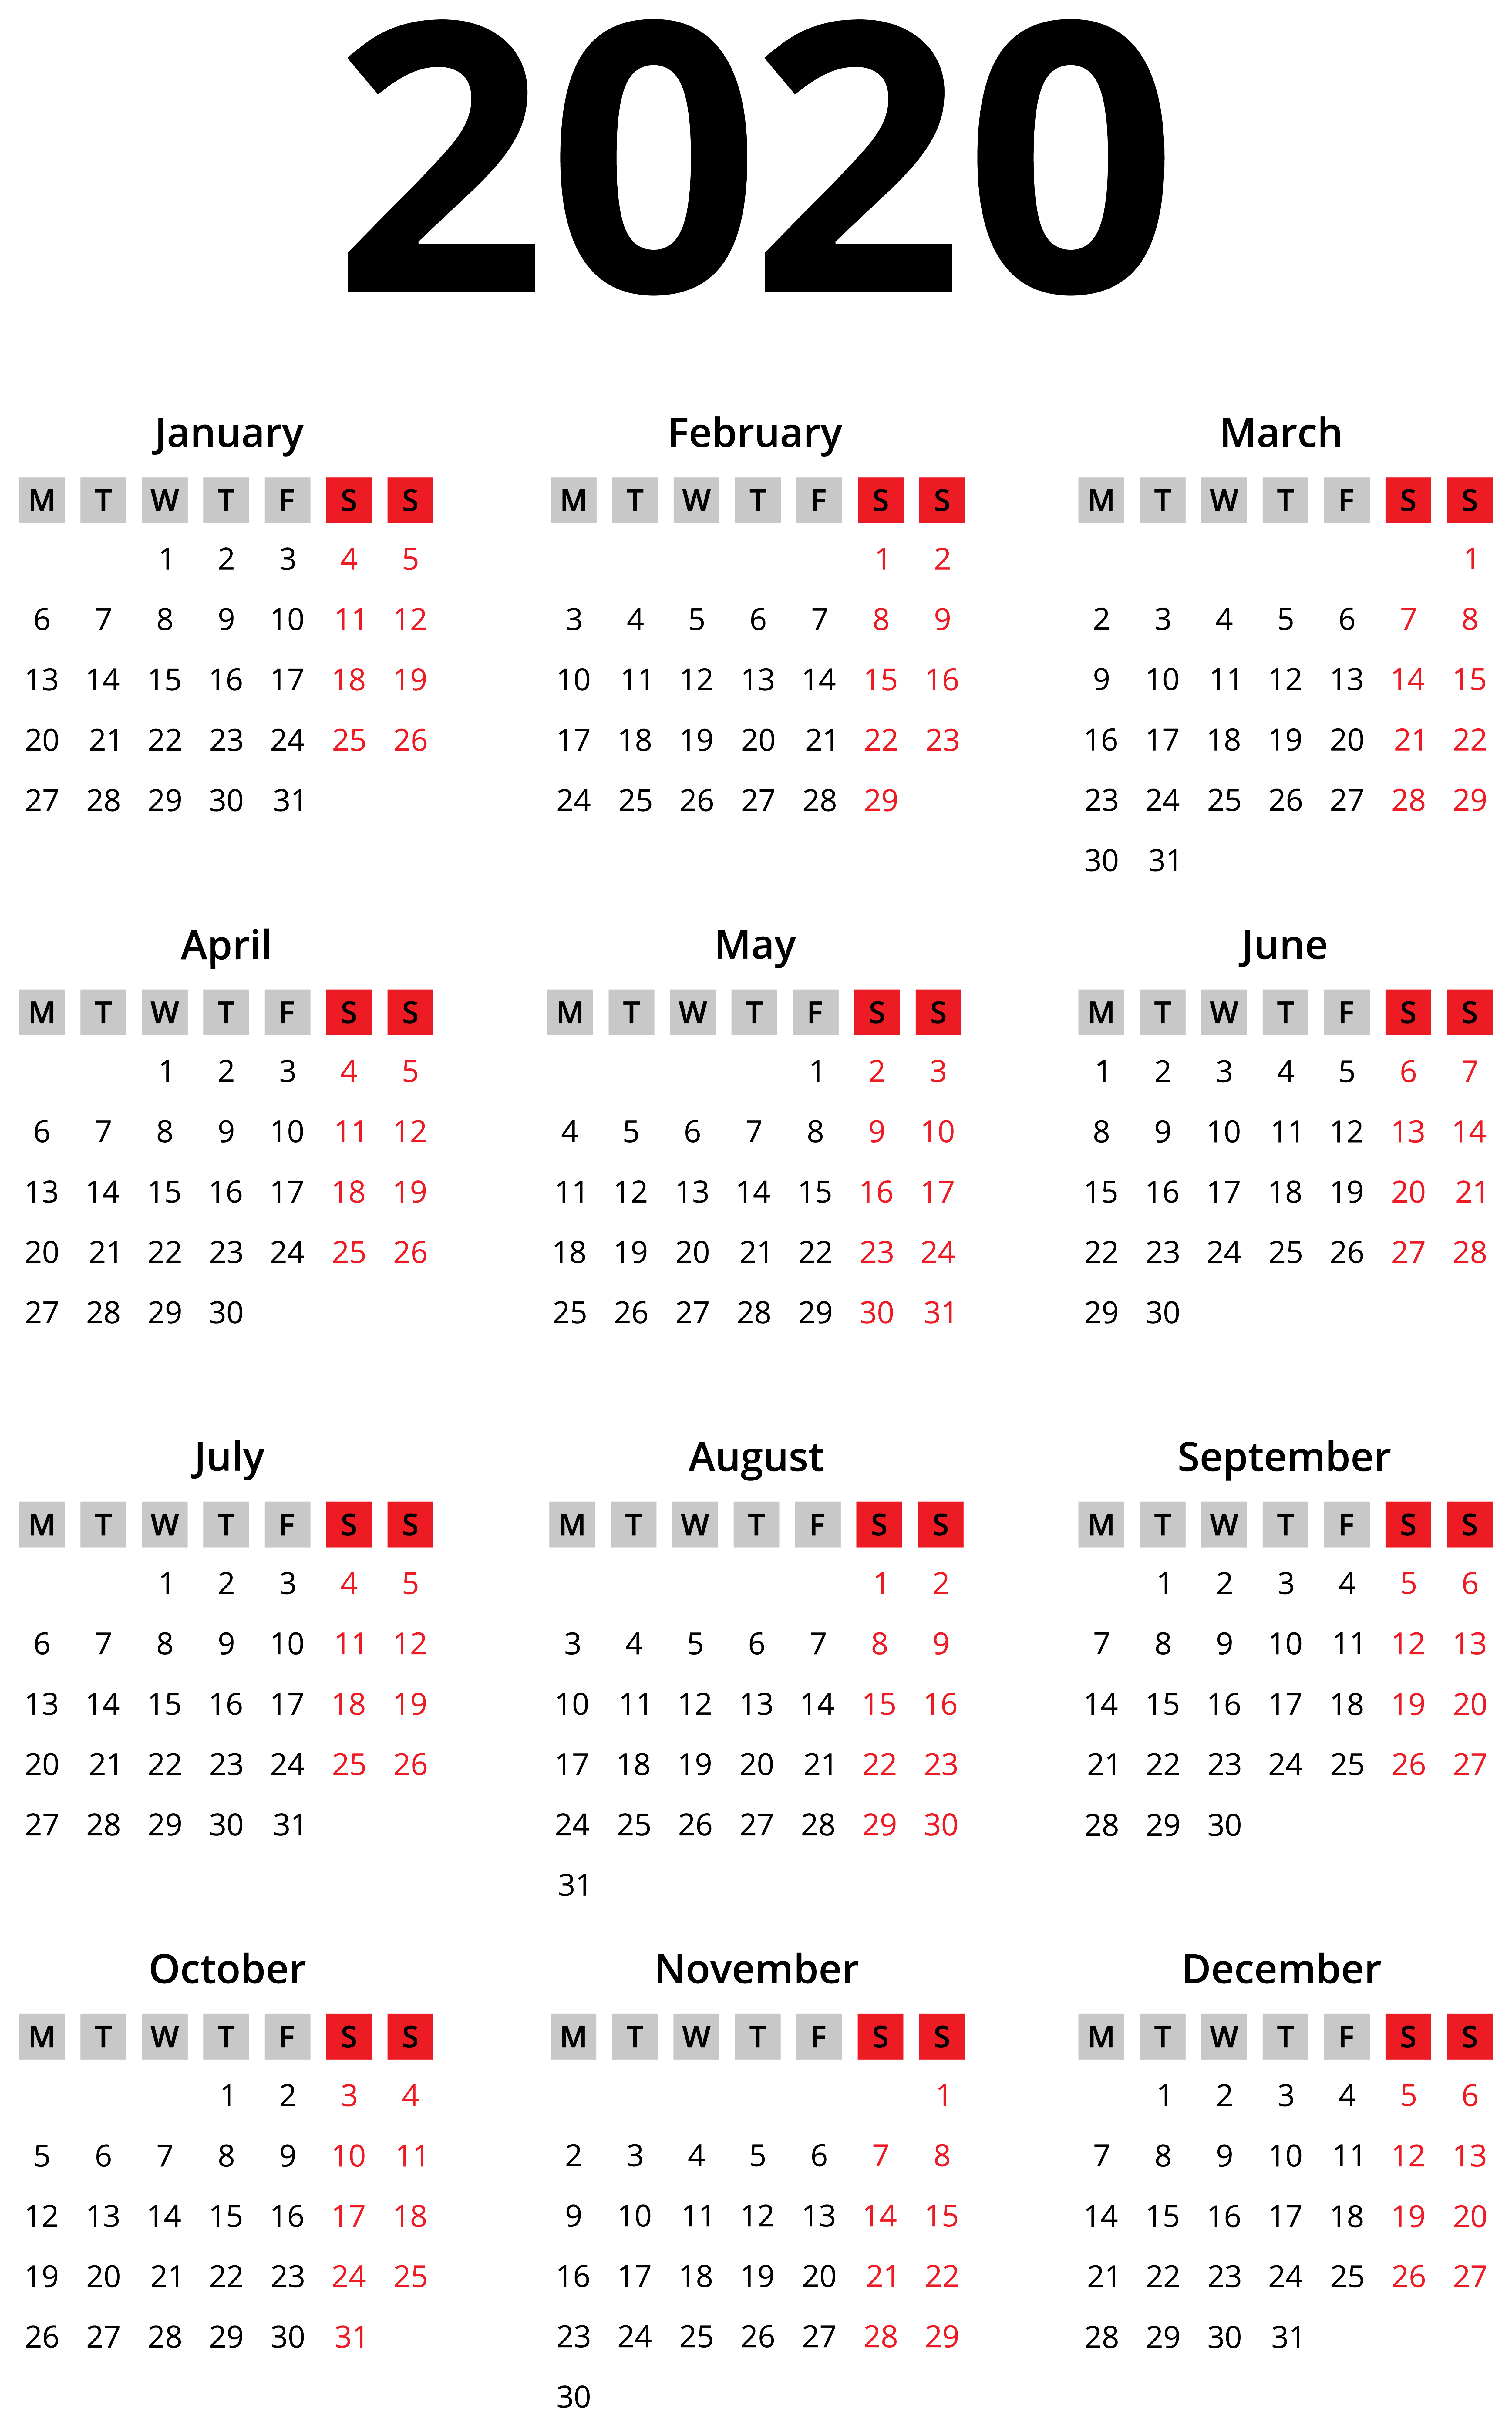 2020 Calendar Wallpapers - Wallpaper Cave5 日前